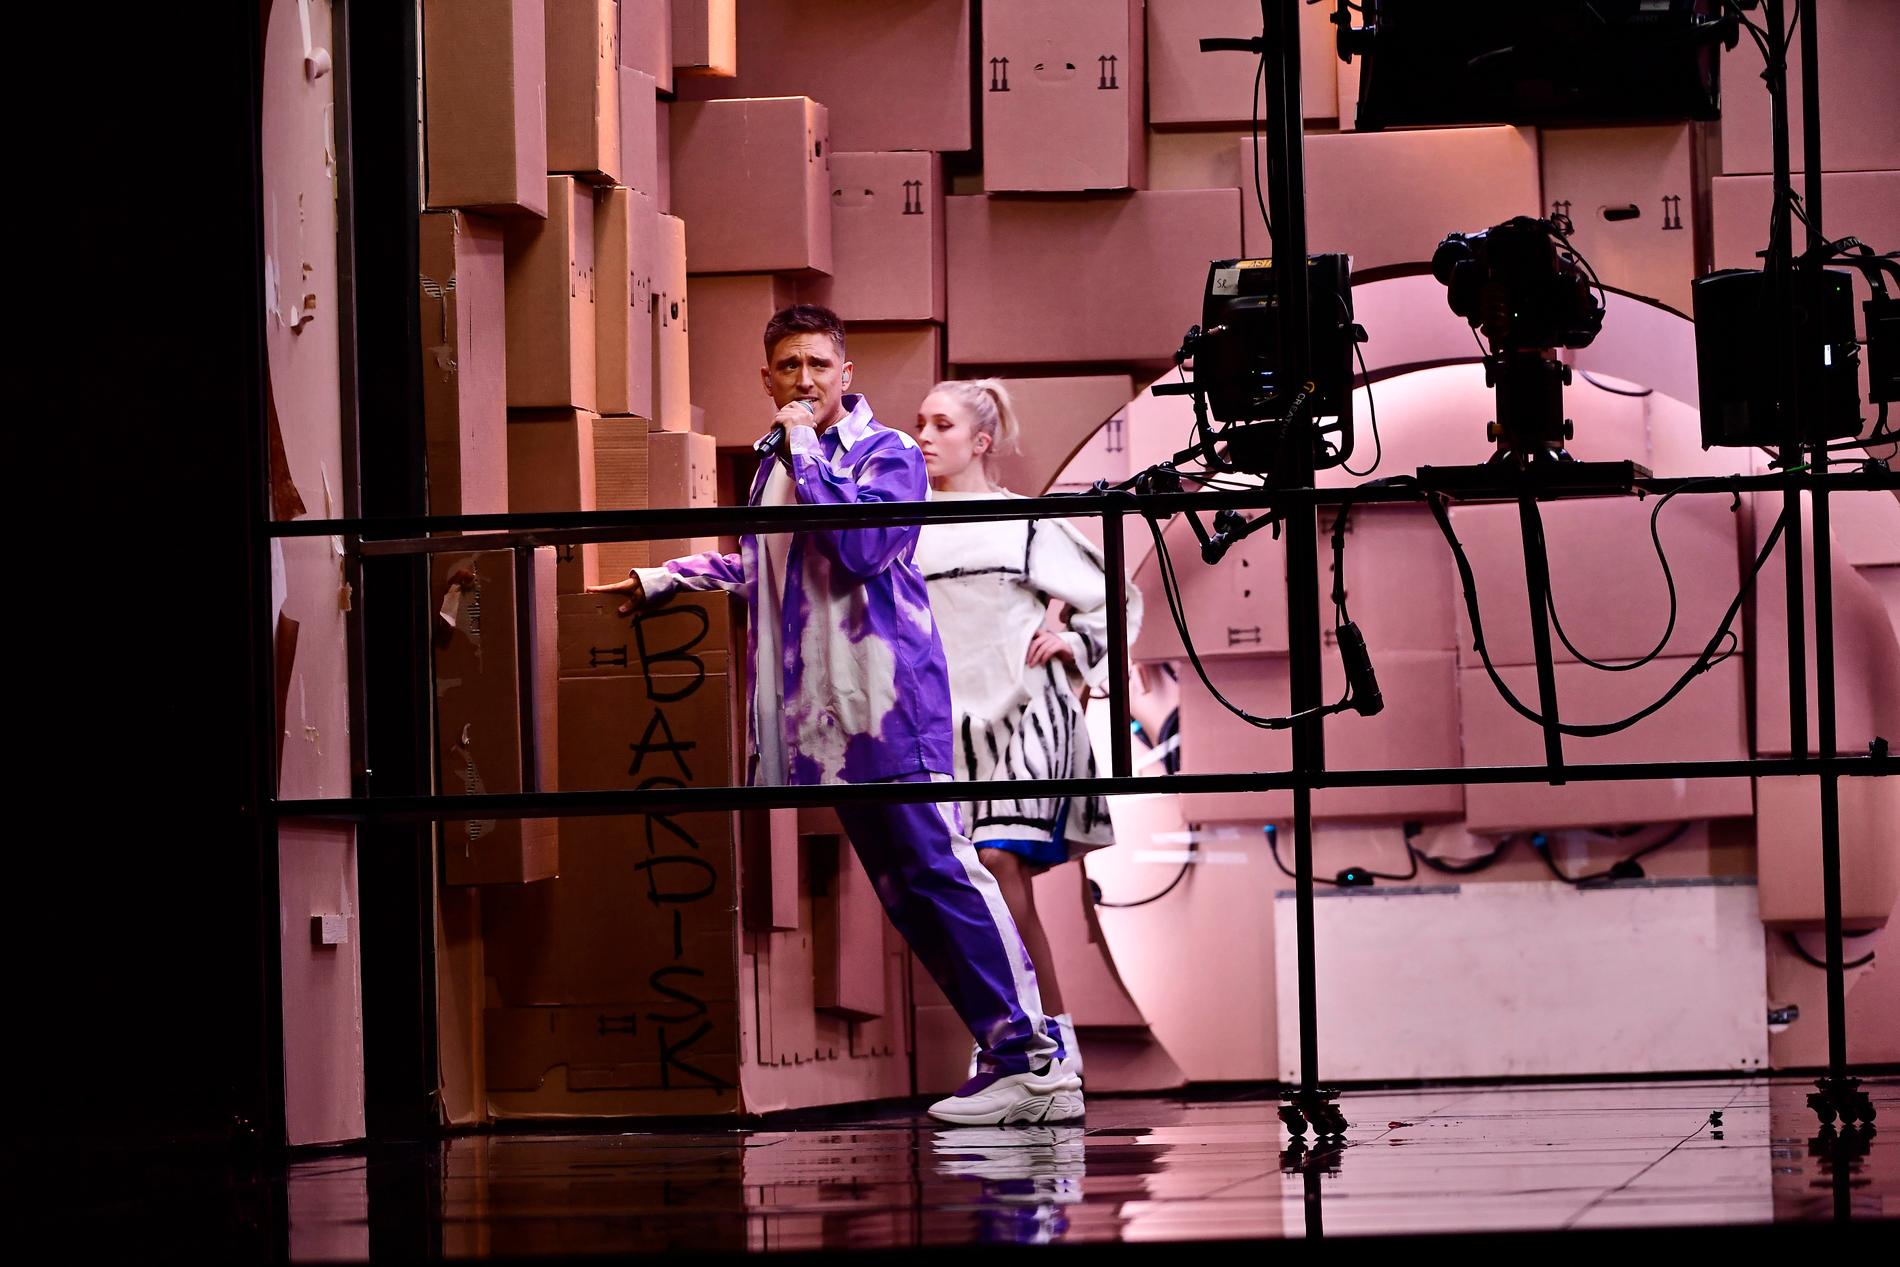 ”300 kilo vägg och rum och lådor som ska knuffas runt på”. Danny Saucedo beskriver sin scenshow i Melodifestivalen.